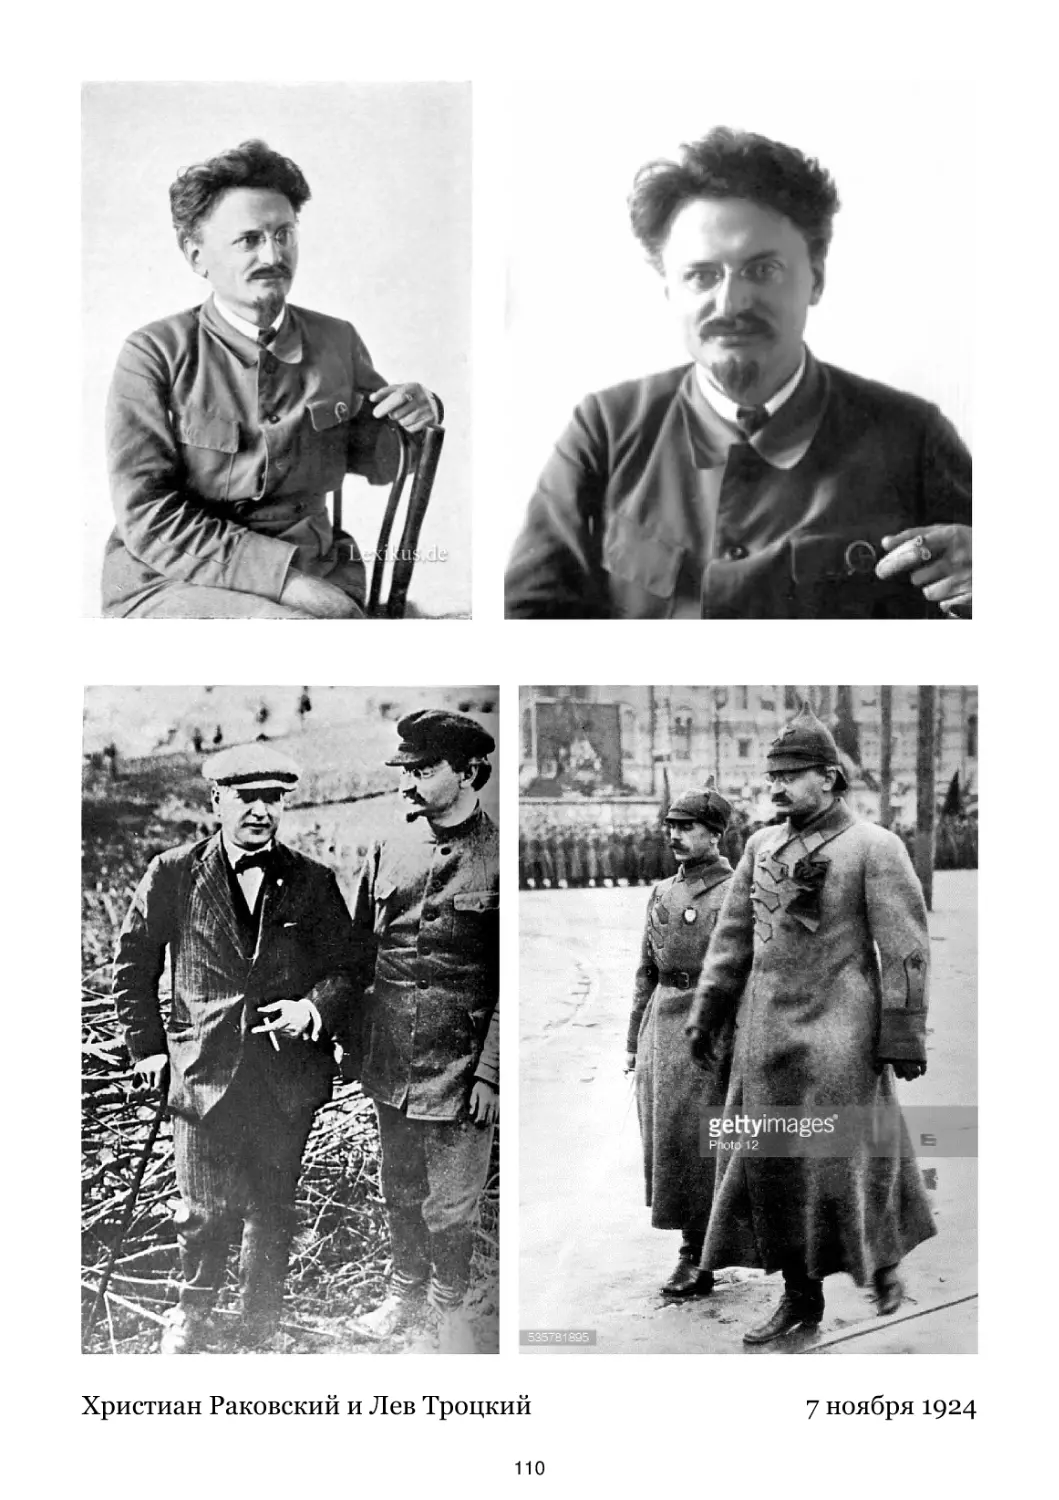 Христиан Раковский и Лев Троцкий
7 ноября 1924